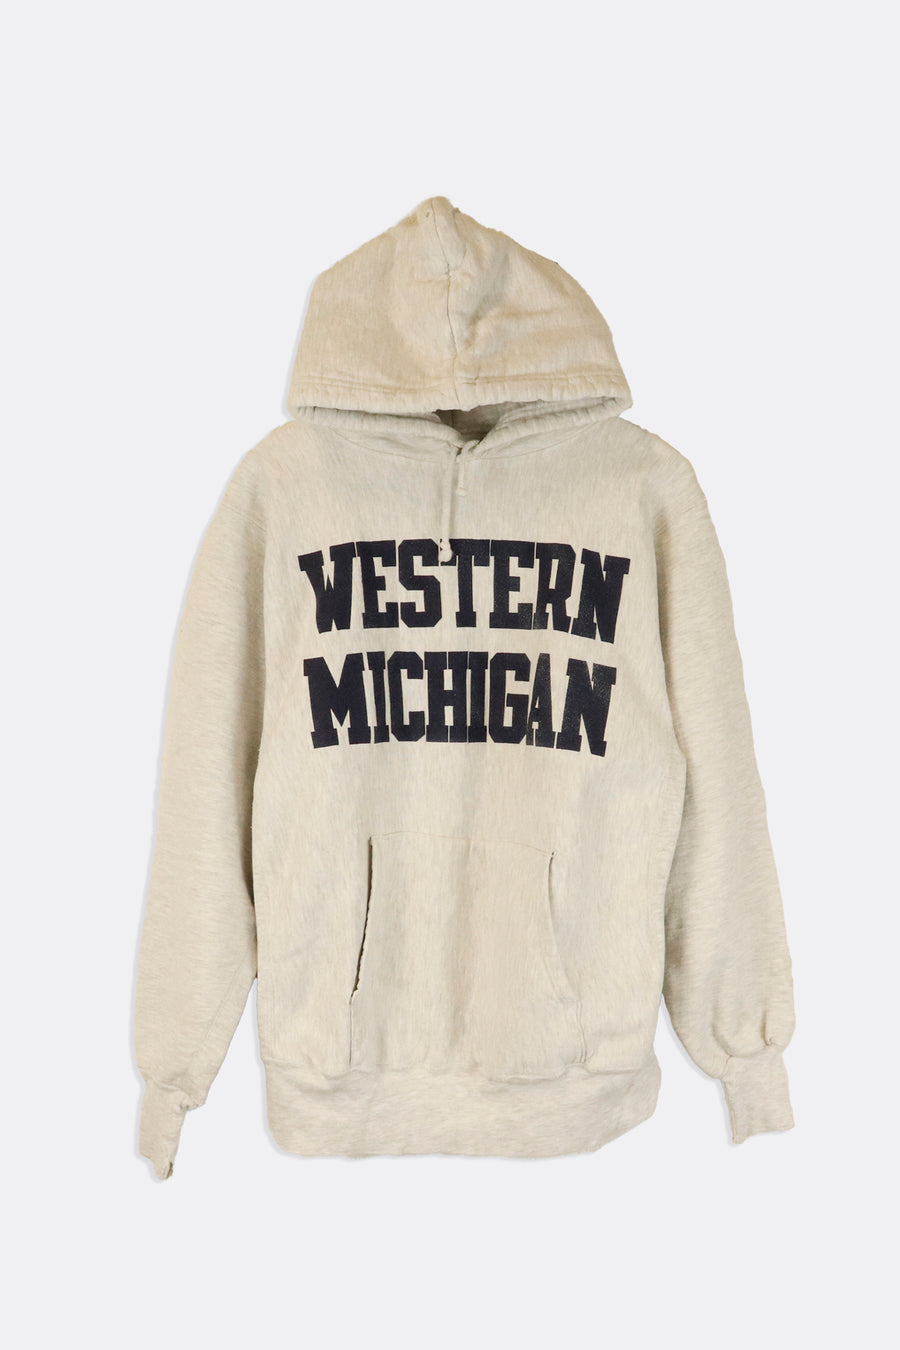 Vintage Western Michigan Simple Block Lettering Navy Font Hoodie Sweatshirt Sz L